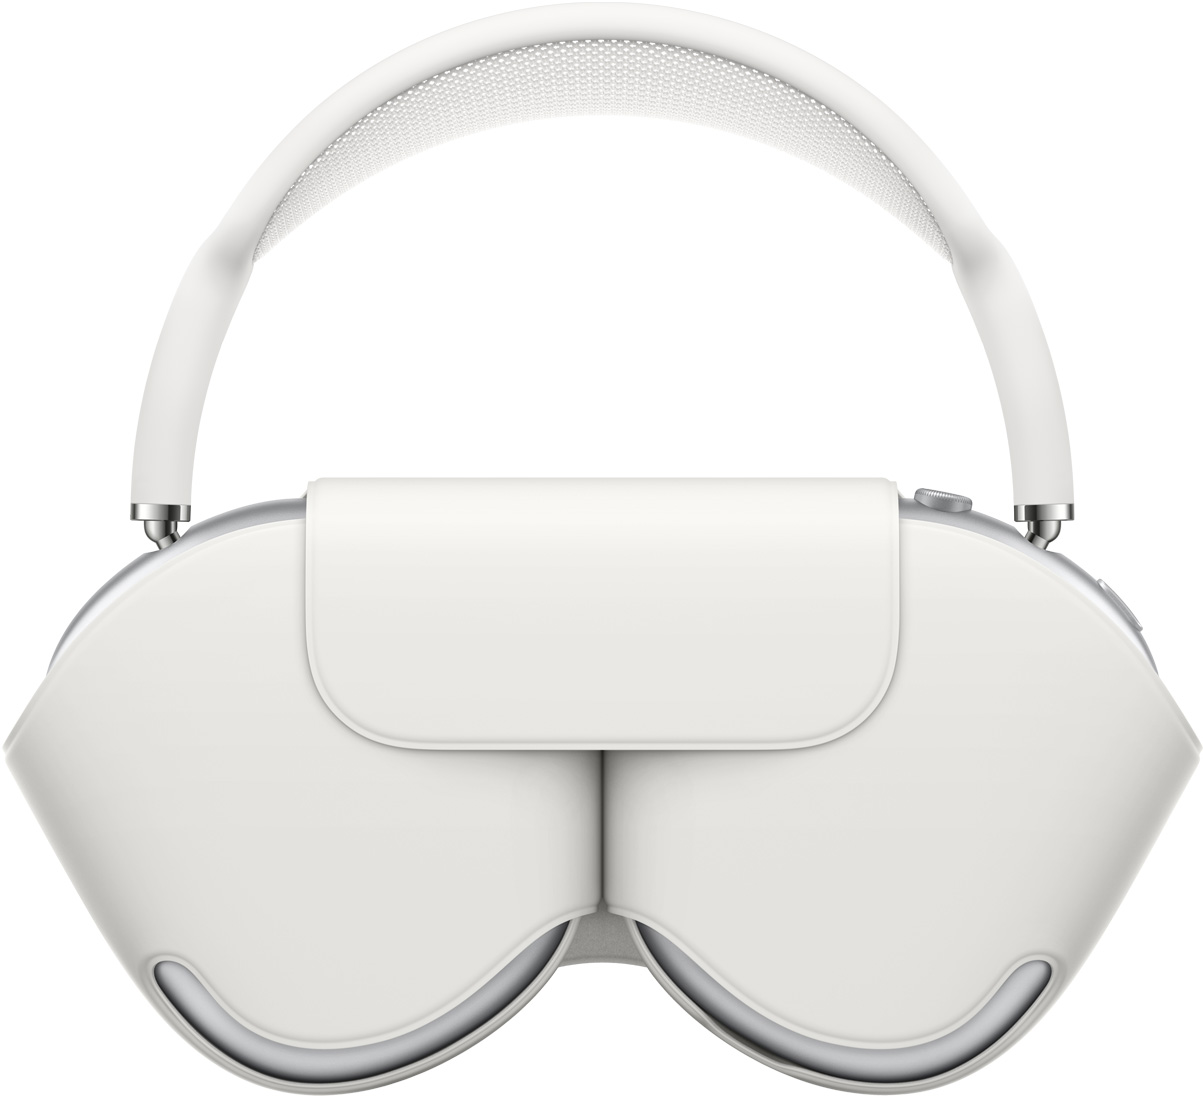 銀色 AirPods Max 配上相襯的白色智慧型耳筒套來保護耳罩；耳筒放入後會露出頂篷。